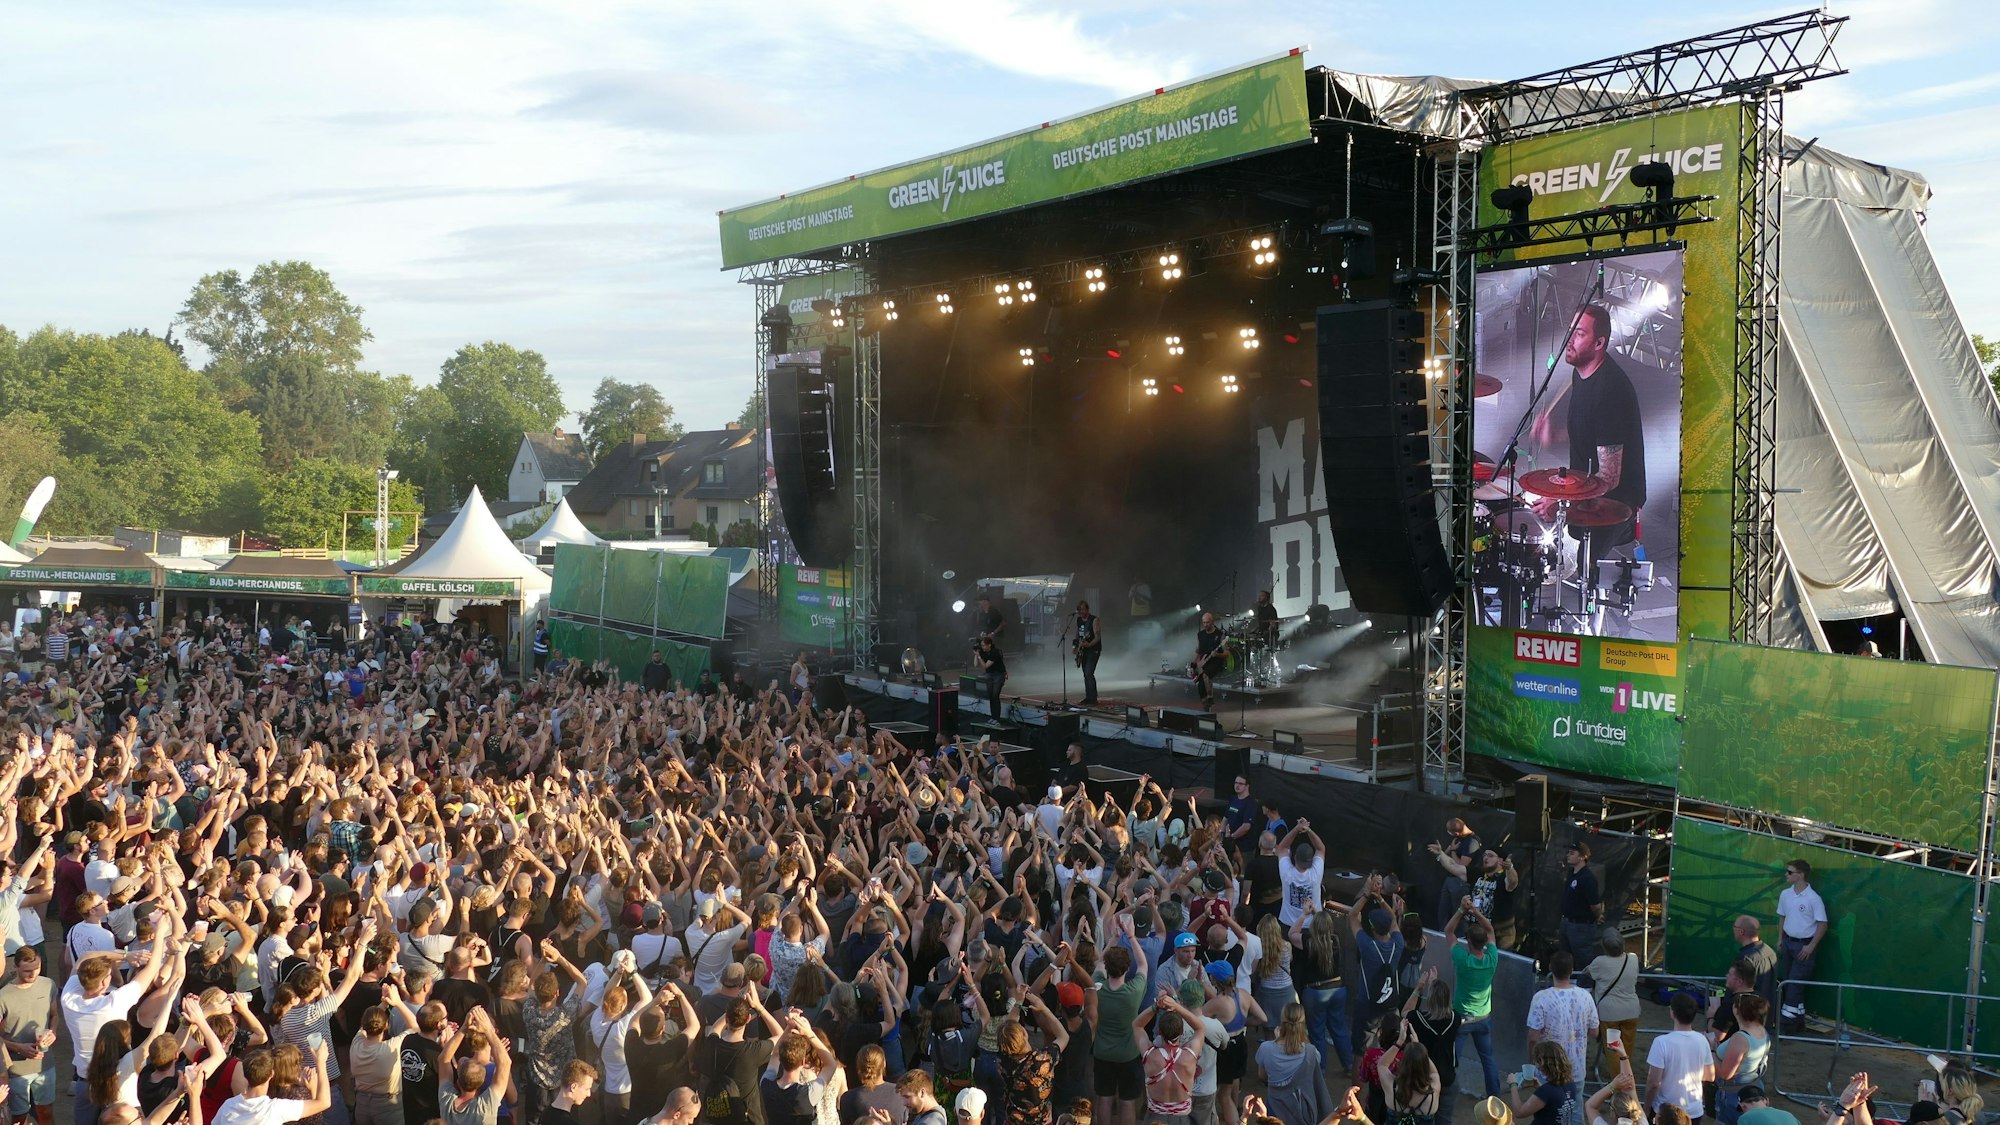 Green Juice-Festival in Bonn. Blick auf die Menschenmenge und die Bühne.